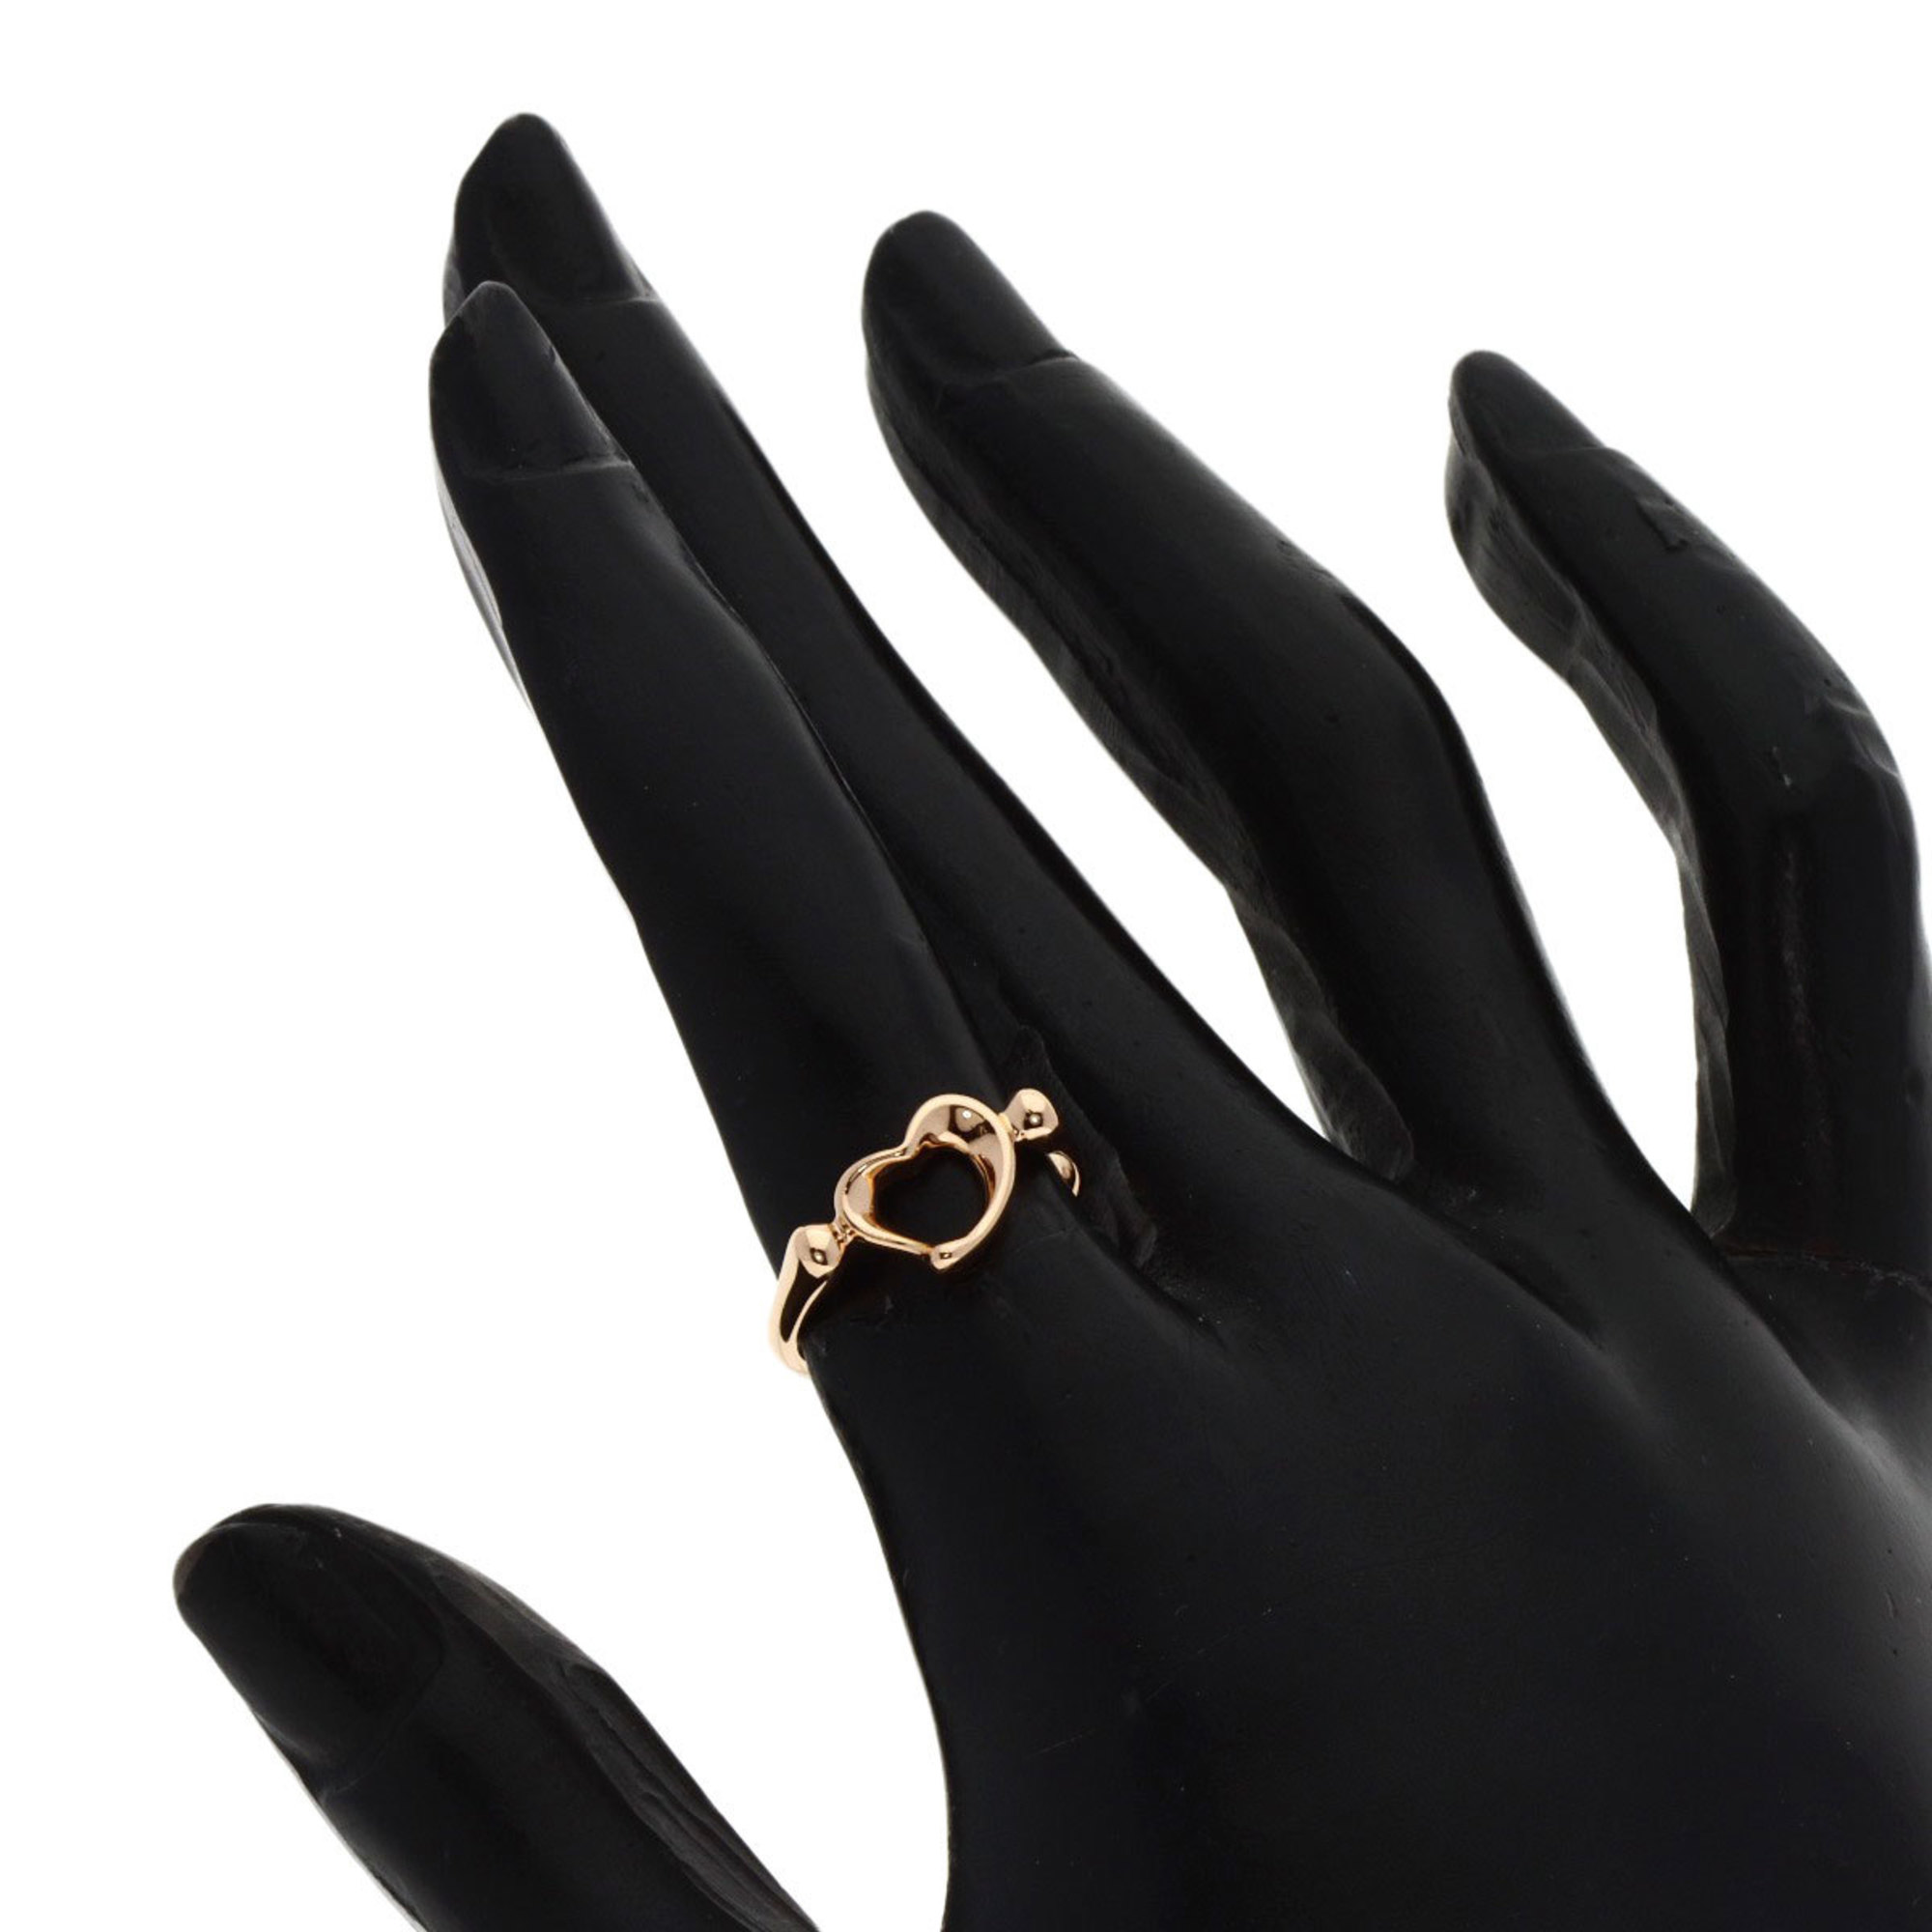 Tiffany & Co. Heart Ring, 18K Pink Gold, Women's, TIFFANY